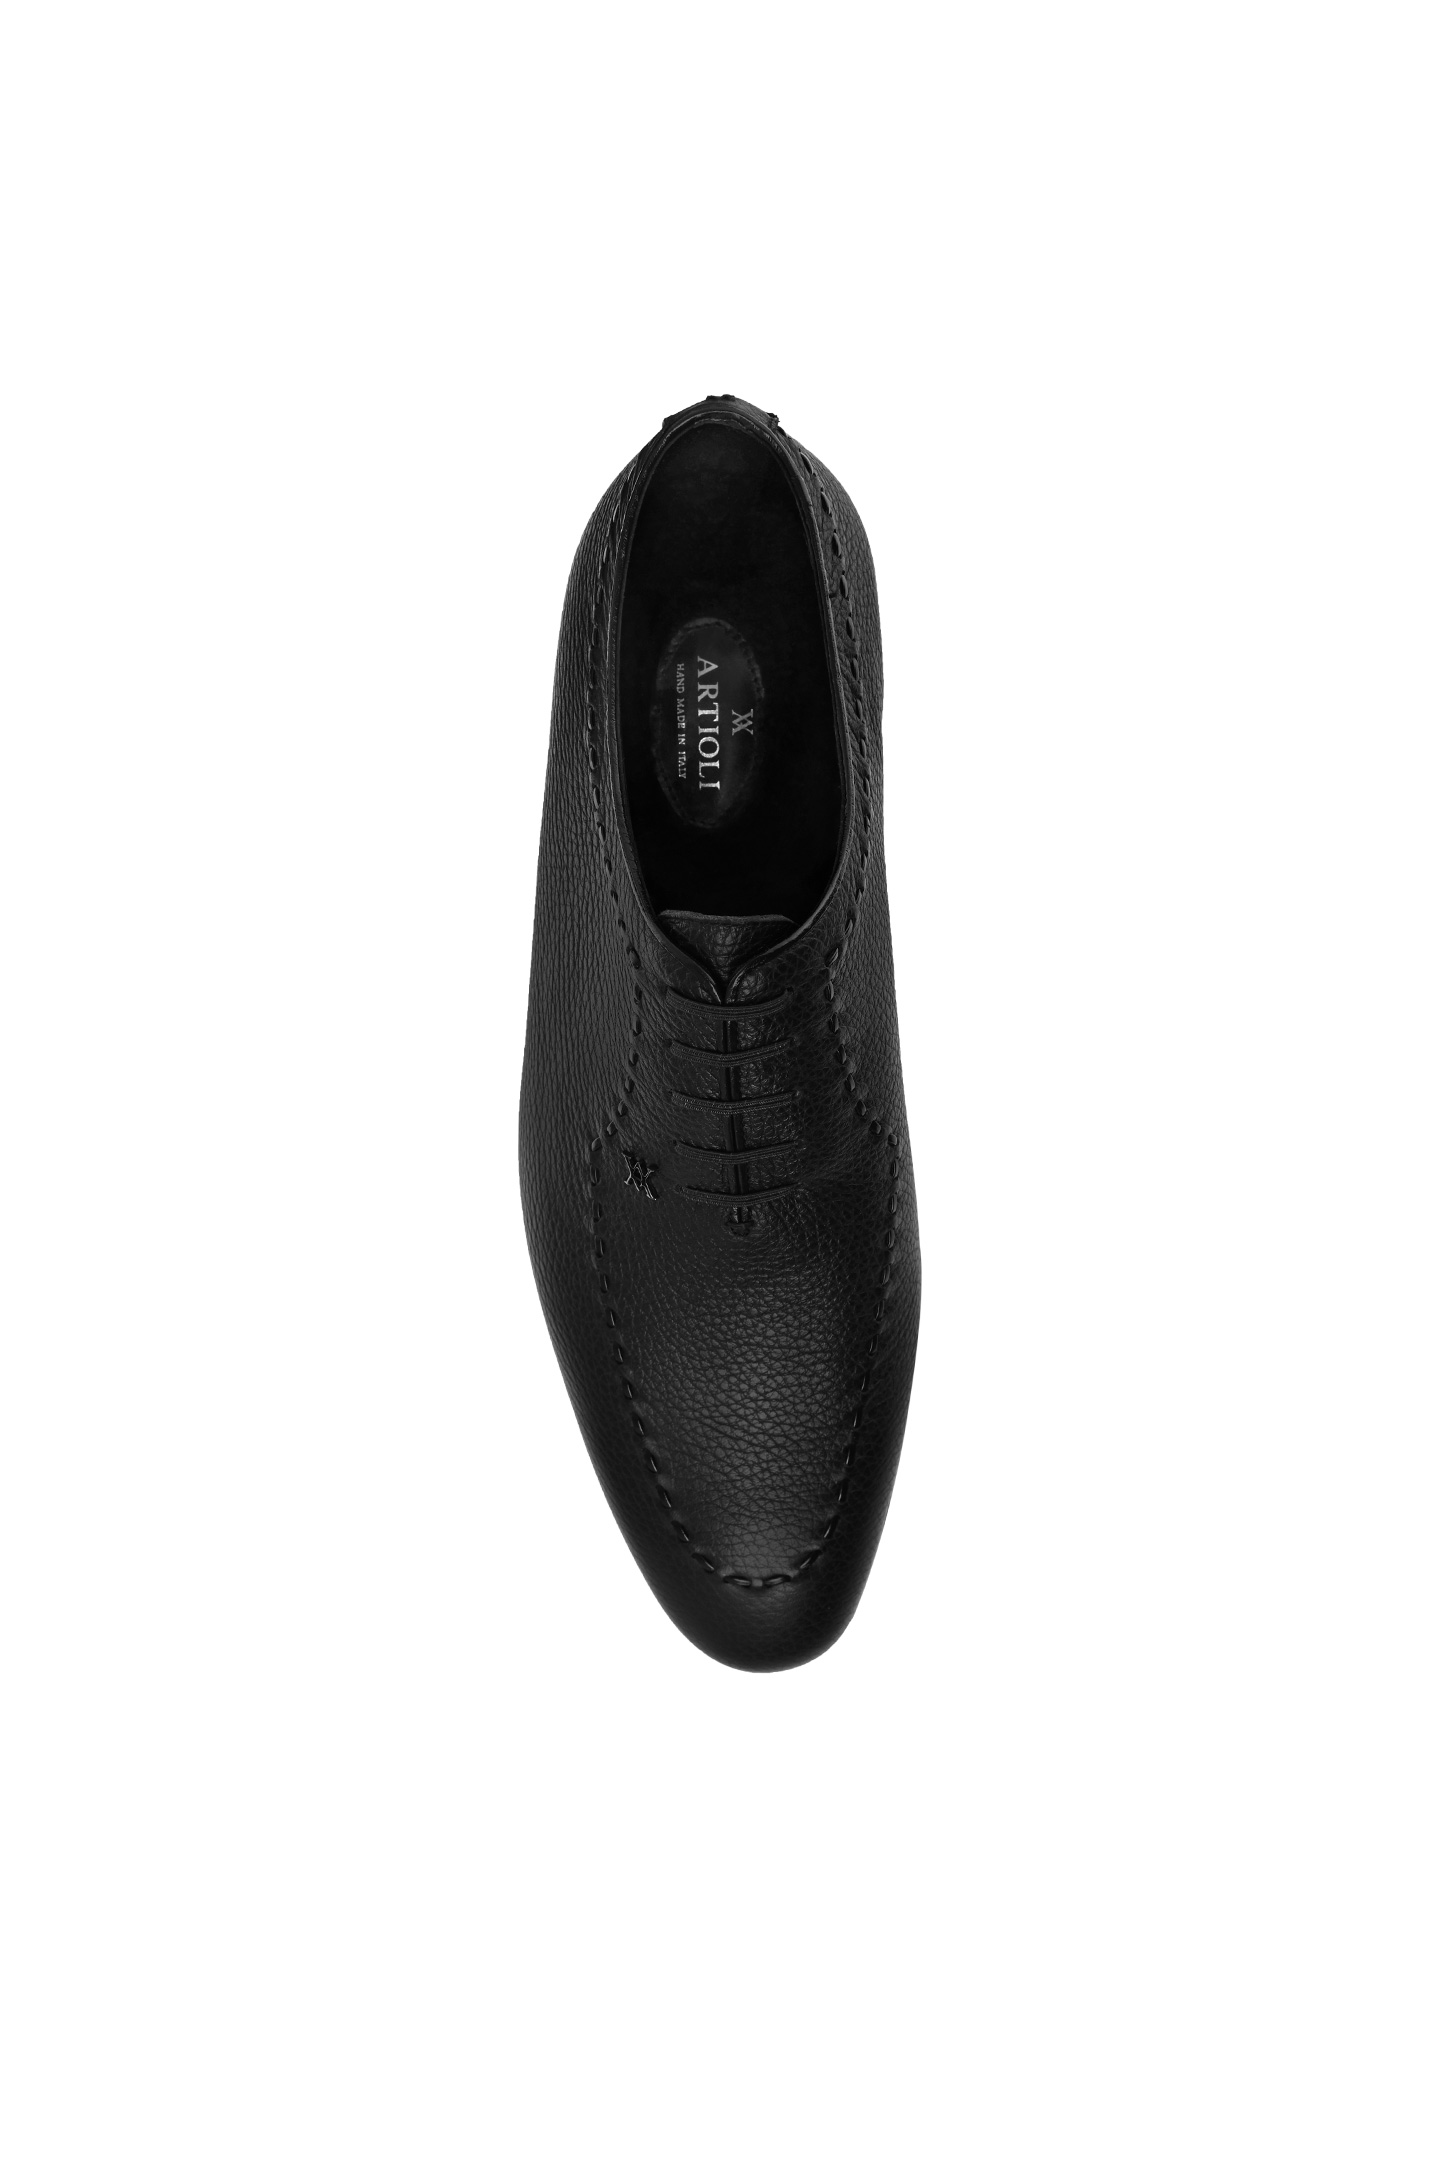 Туфли ARTIOLI 06S404, цвет: Черный, Мужской